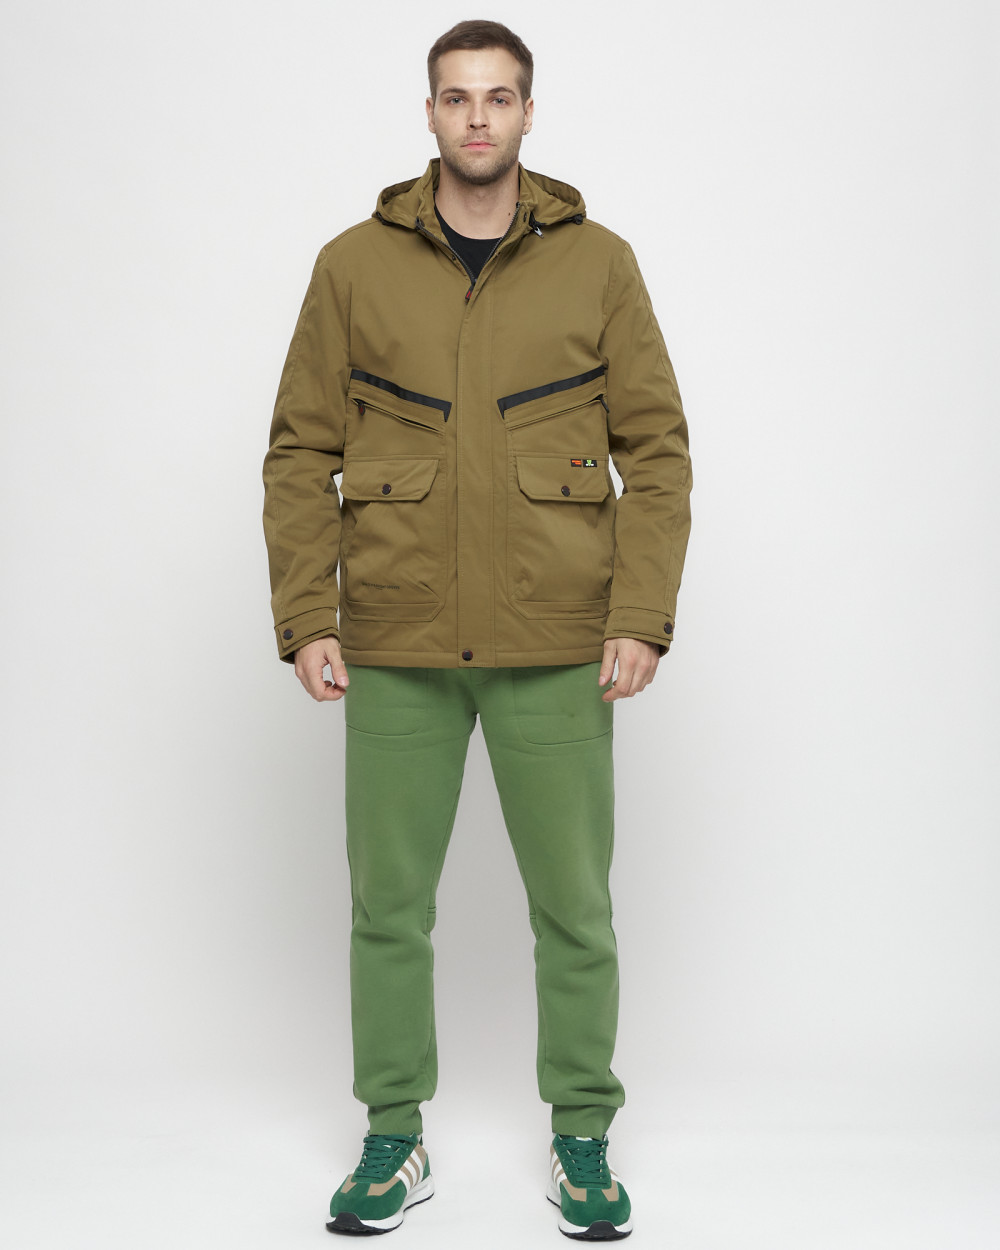 Купить куртку мужскую спортивную весеннюю оптом от производителя недорого в Москве 8596B 1